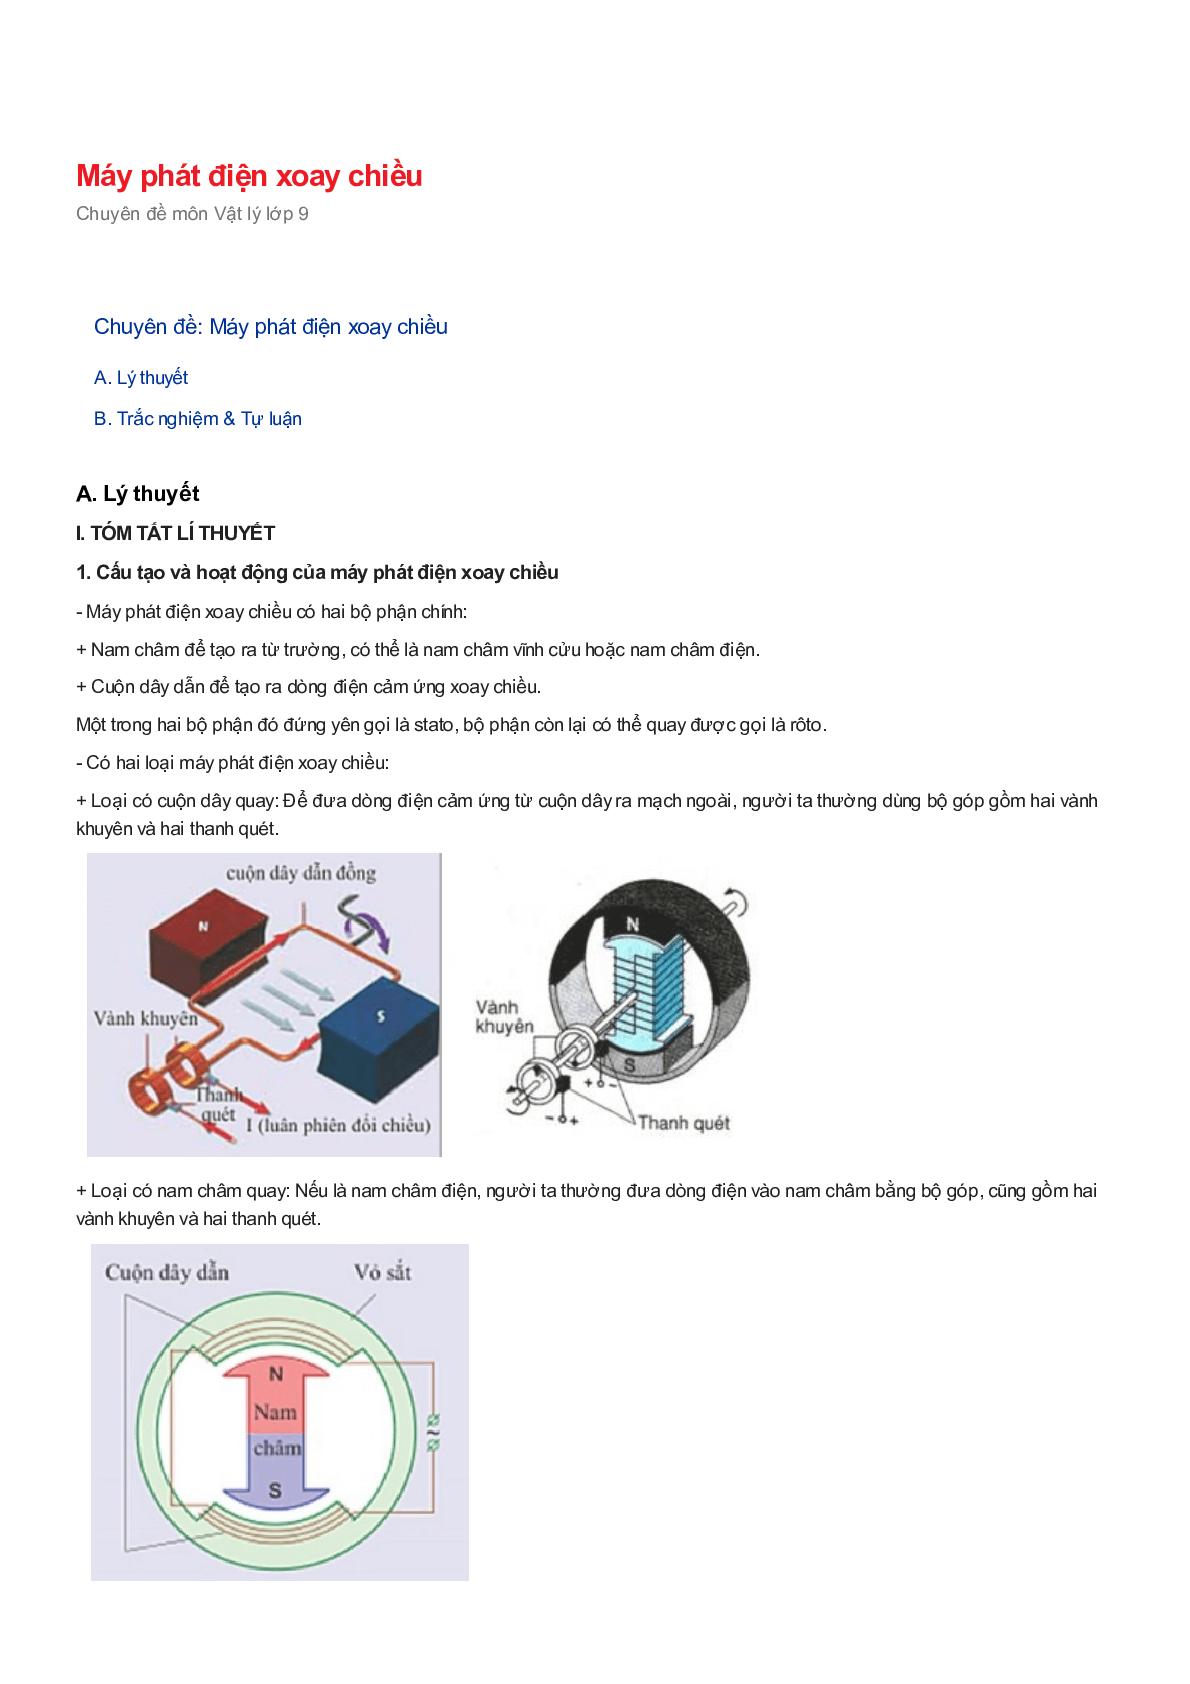 Chuyên đề Vật lý 9: Máy phát điện xoay chiều (trang 1)